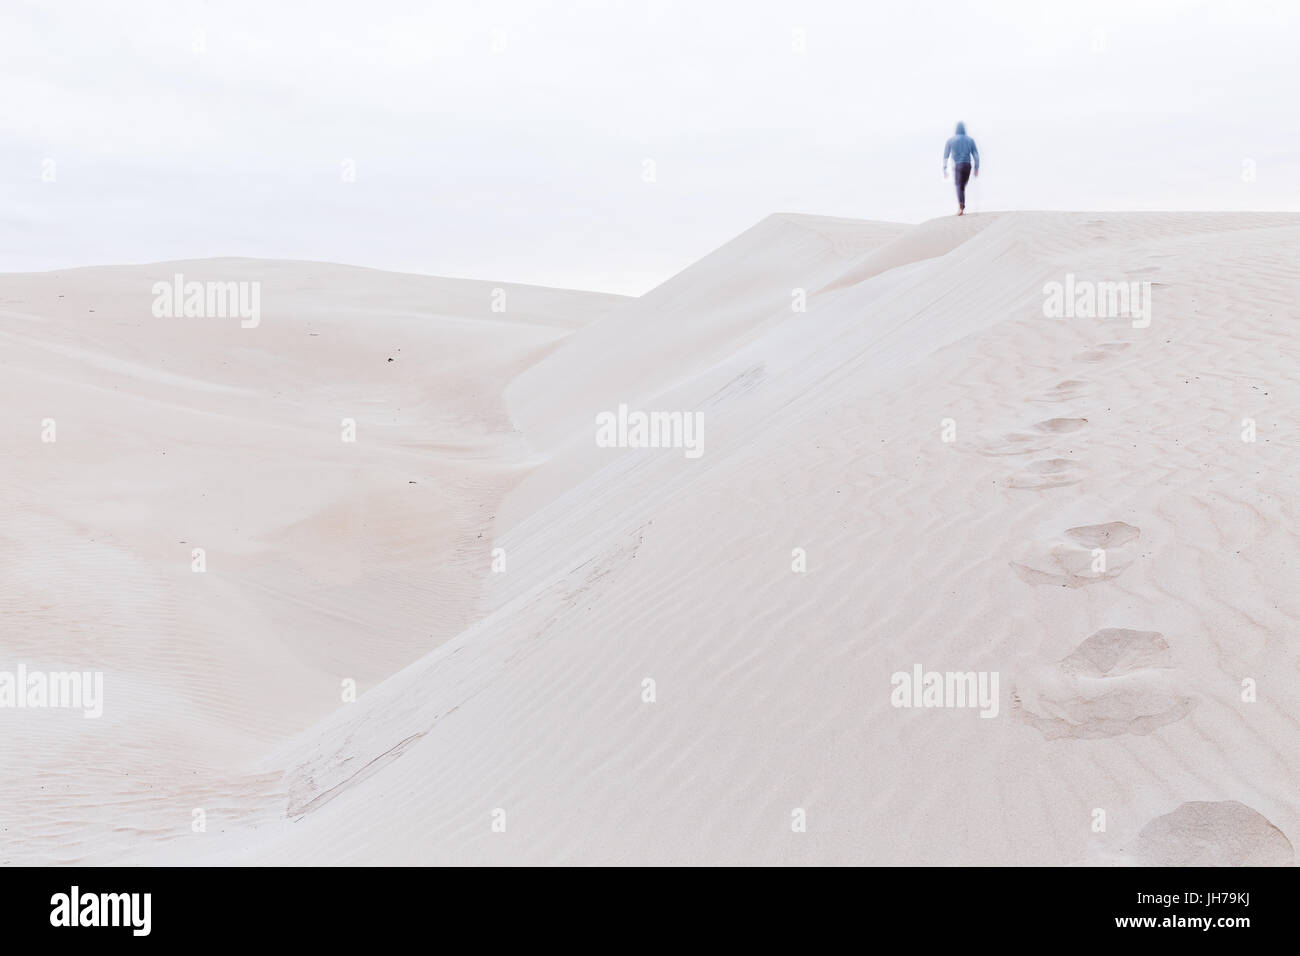 Une personne marche le long d'une crête de dunes de sable, laissant derrière lui une traînée d'empreintes de pas dans le sable. Banque D'Images